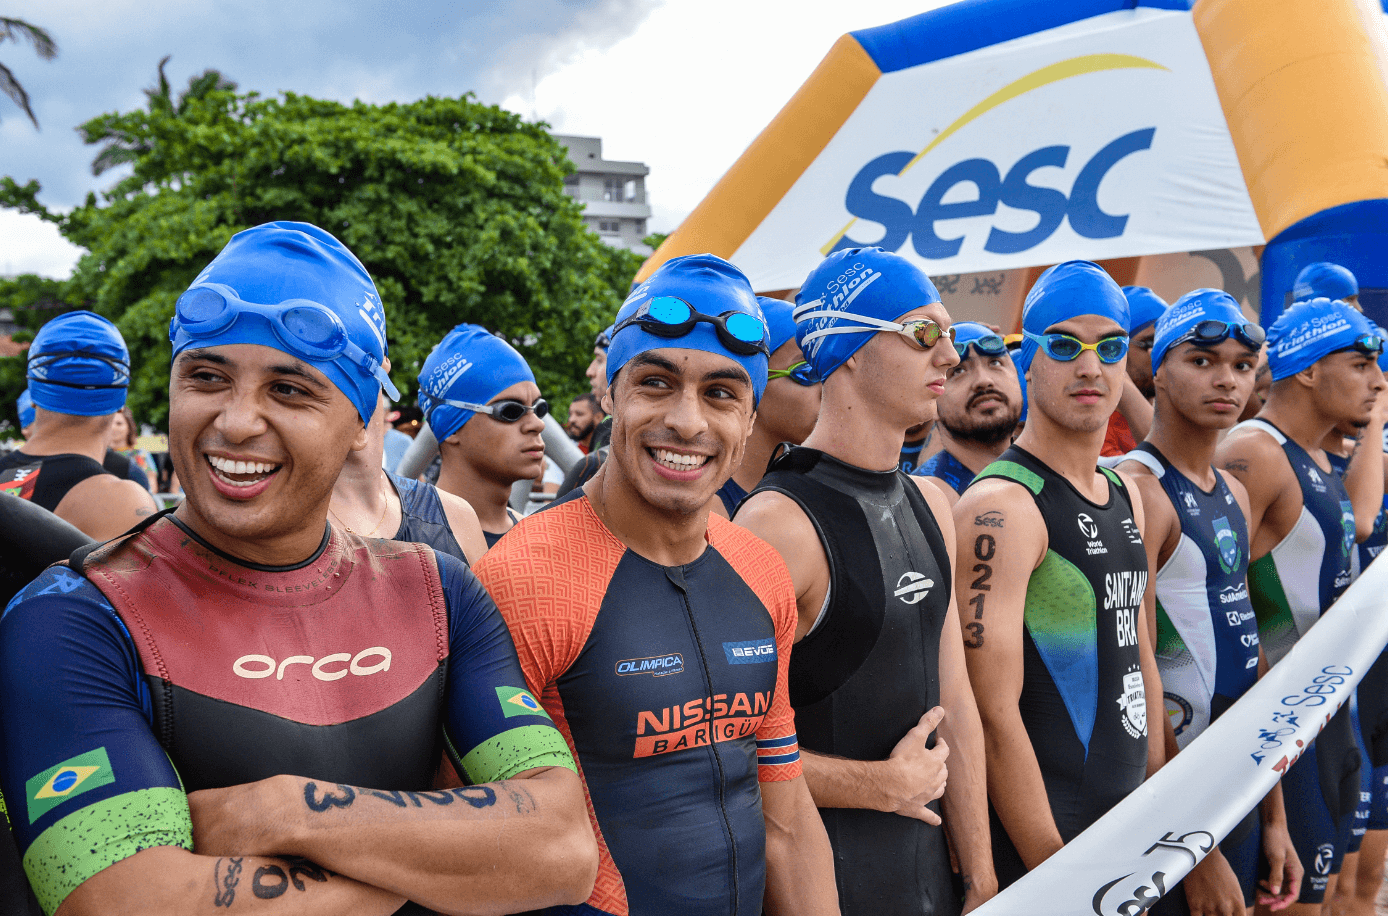 Últimas notícias  Matinhos recebe mais uma edição do Sesc Triathlon no  domingo - Band News FM Curitiba